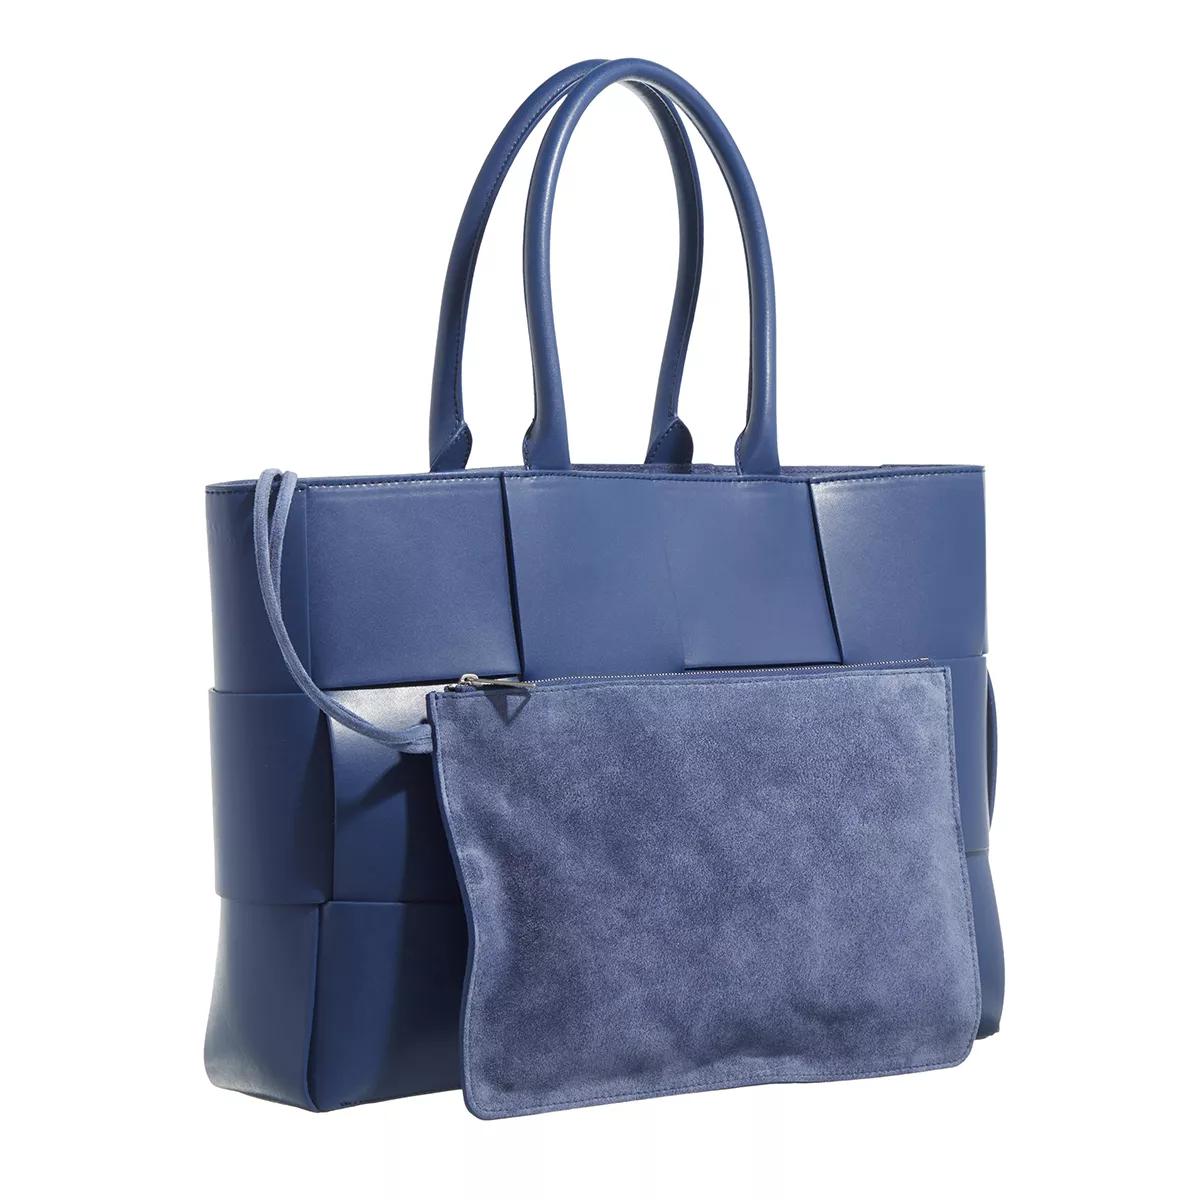 Bottega Veneta Schoudertassen Medium Arco Tote Bag in blauw